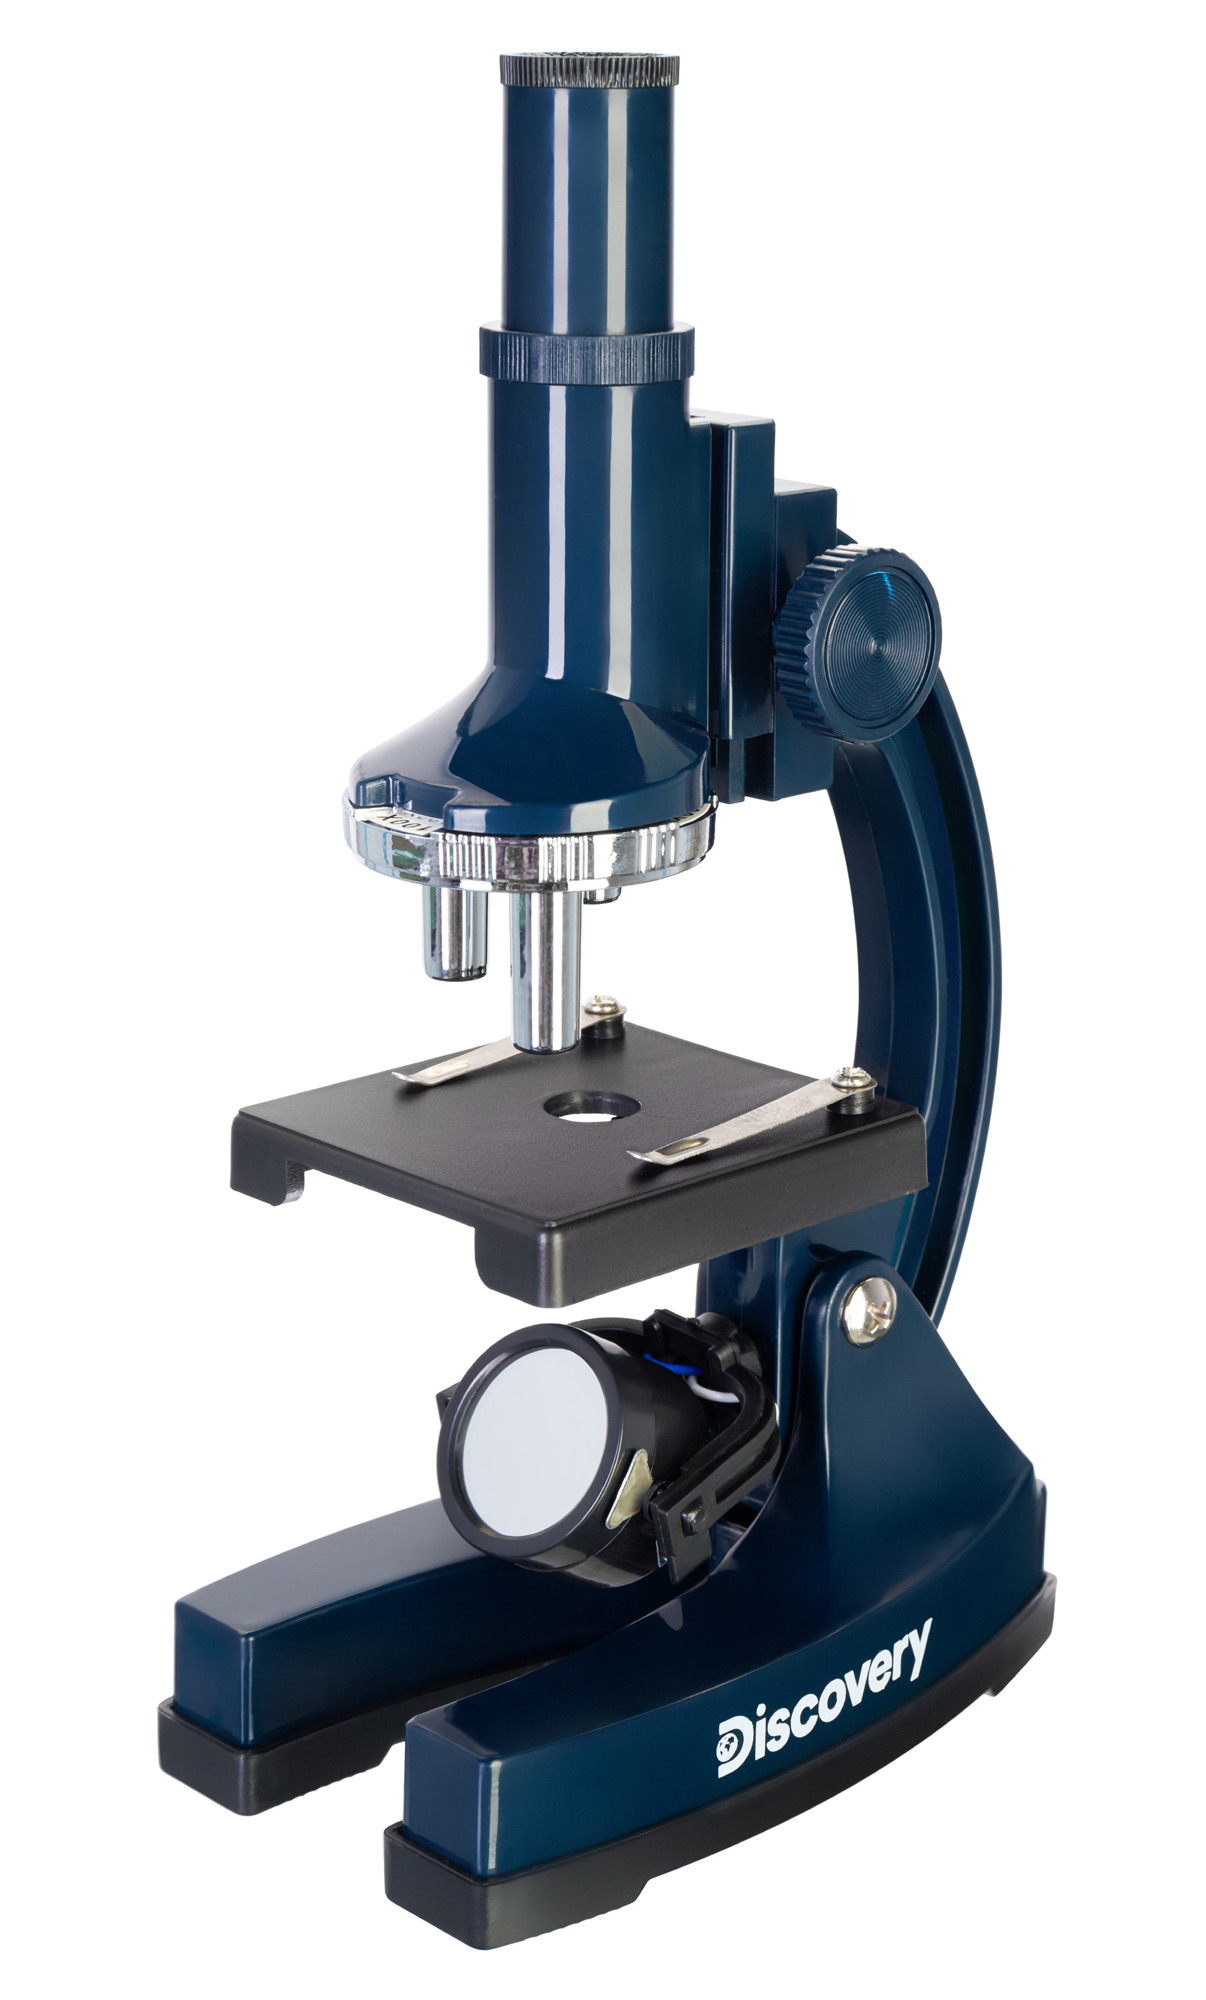 Микроскоп Levenhuk Discovery Centi 02 с книгой